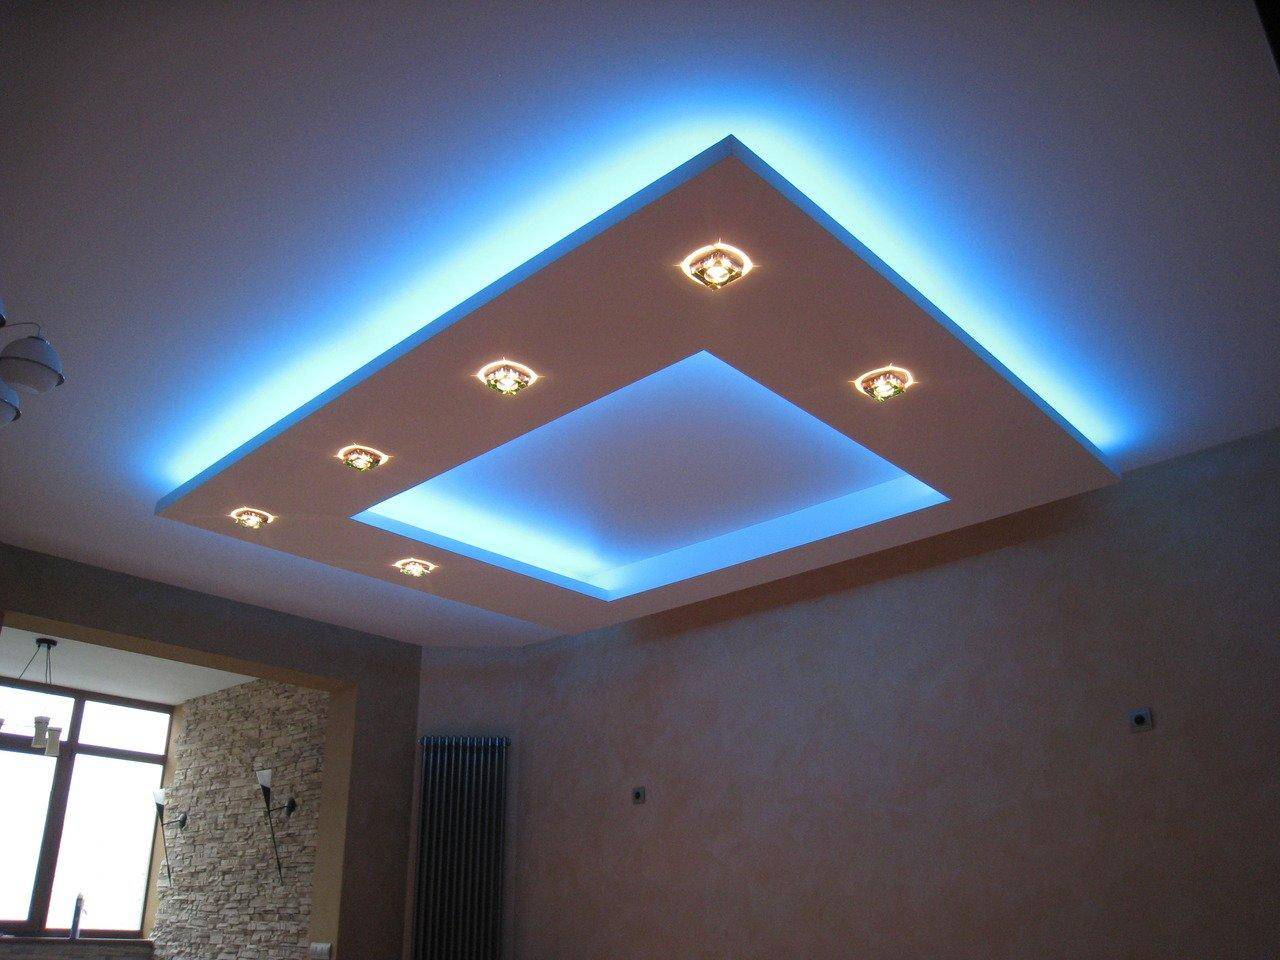 светильники на потолок из гипсокартона фото